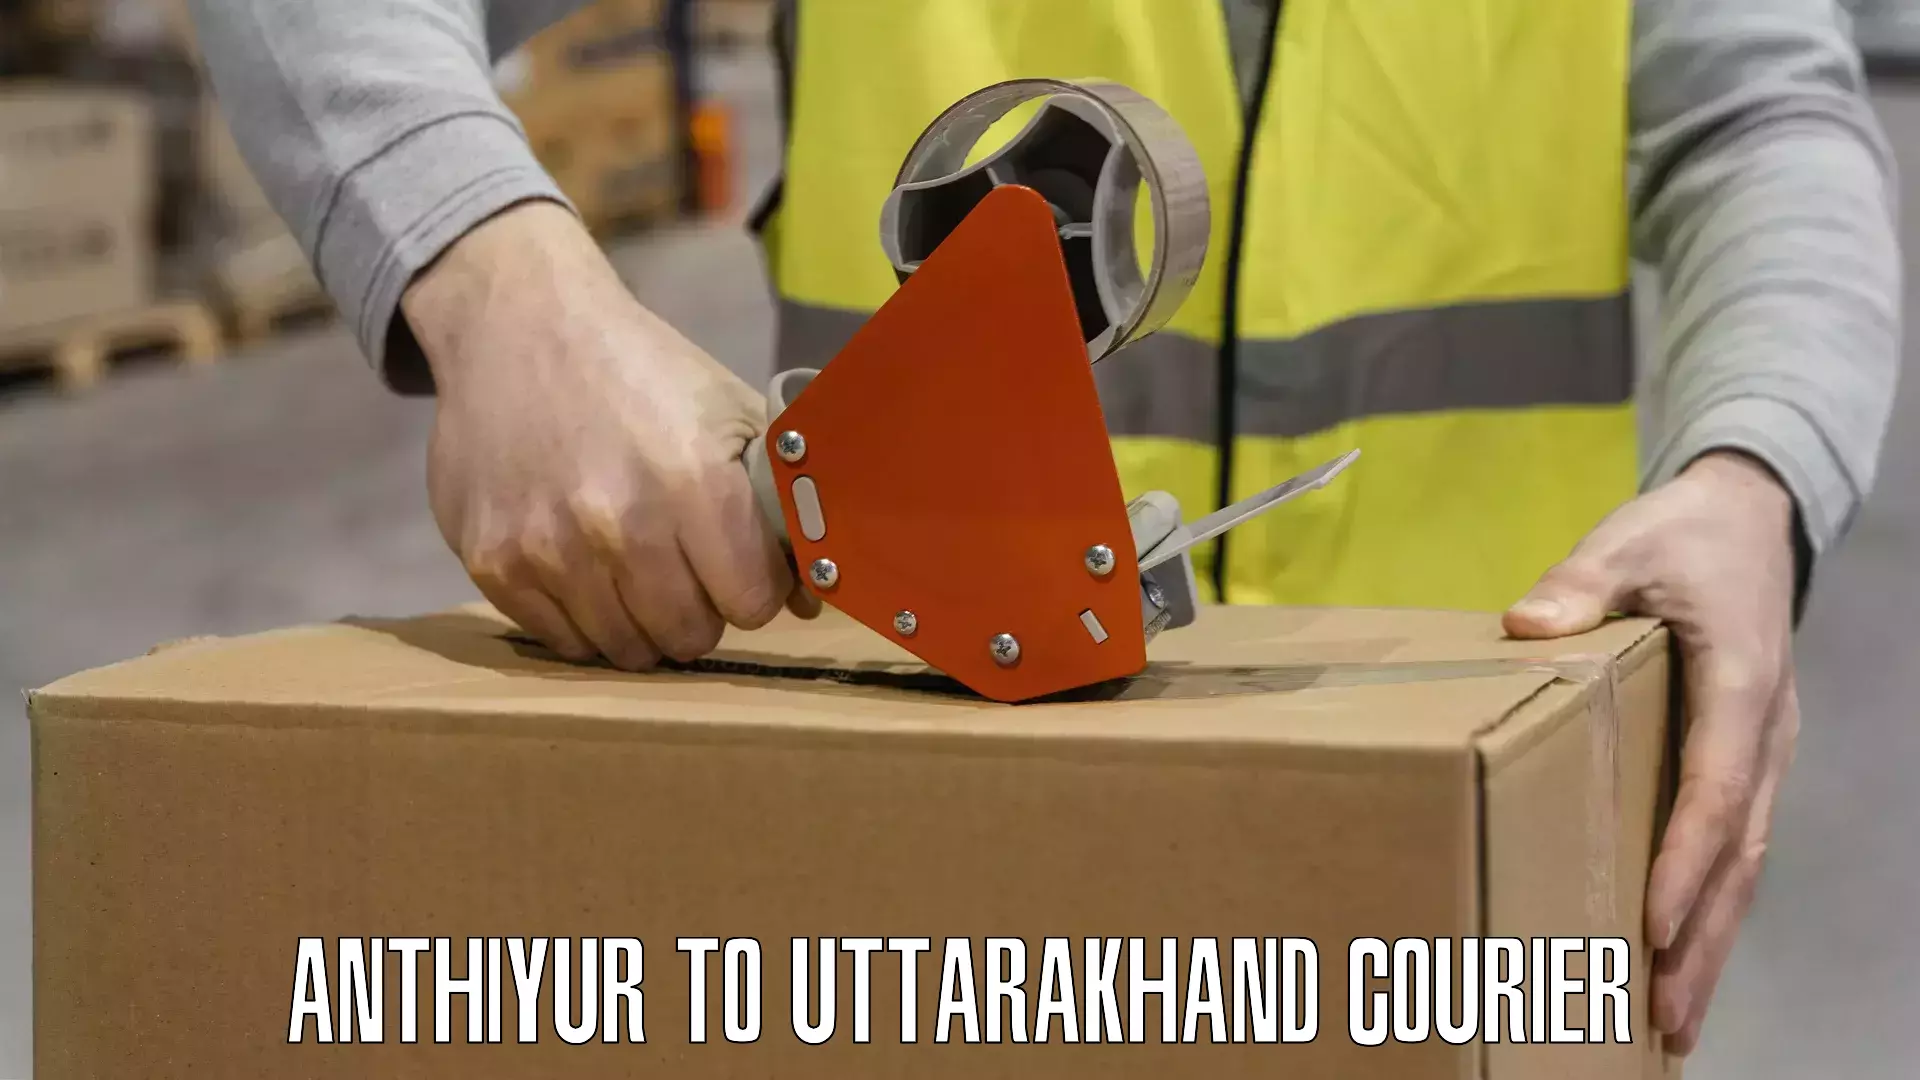 Quick dispatch service Anthiyur to Uttarakhand